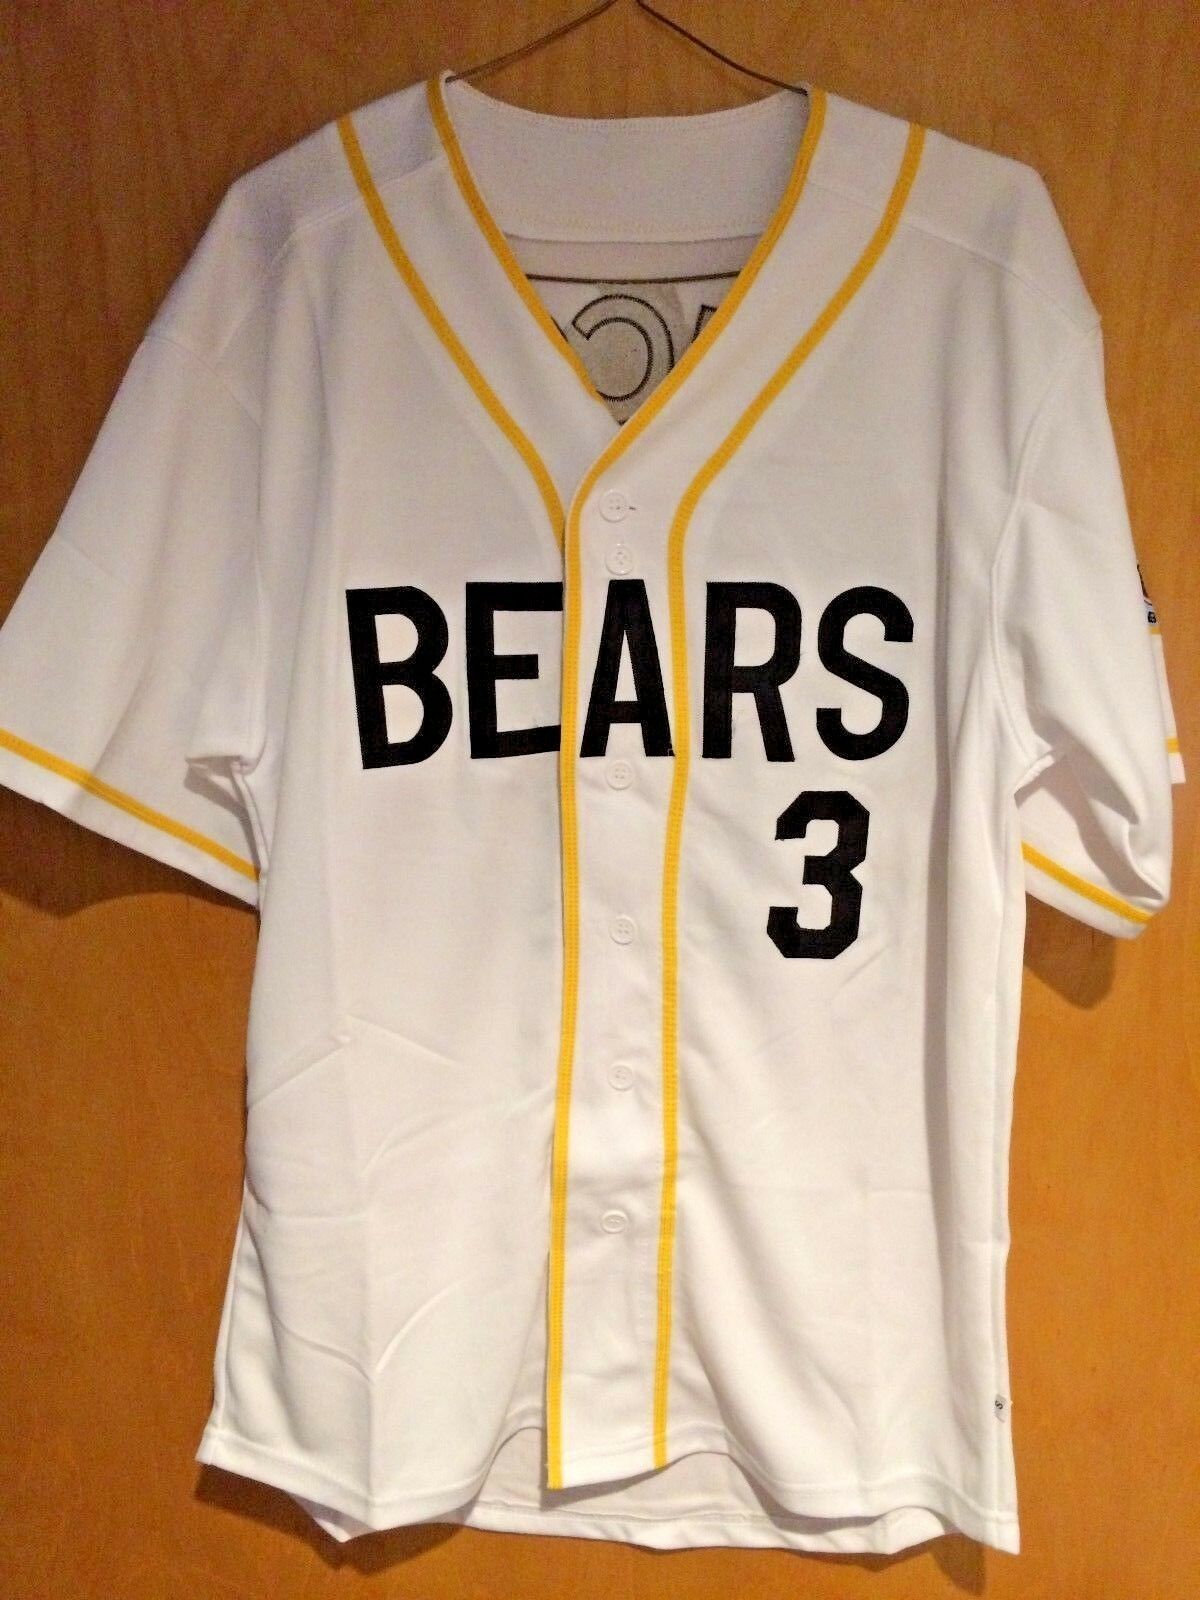 Bad News Bears #3 Kelly Leak Baseball Jersey Sewn Numbers S, M, L, XL, XXL